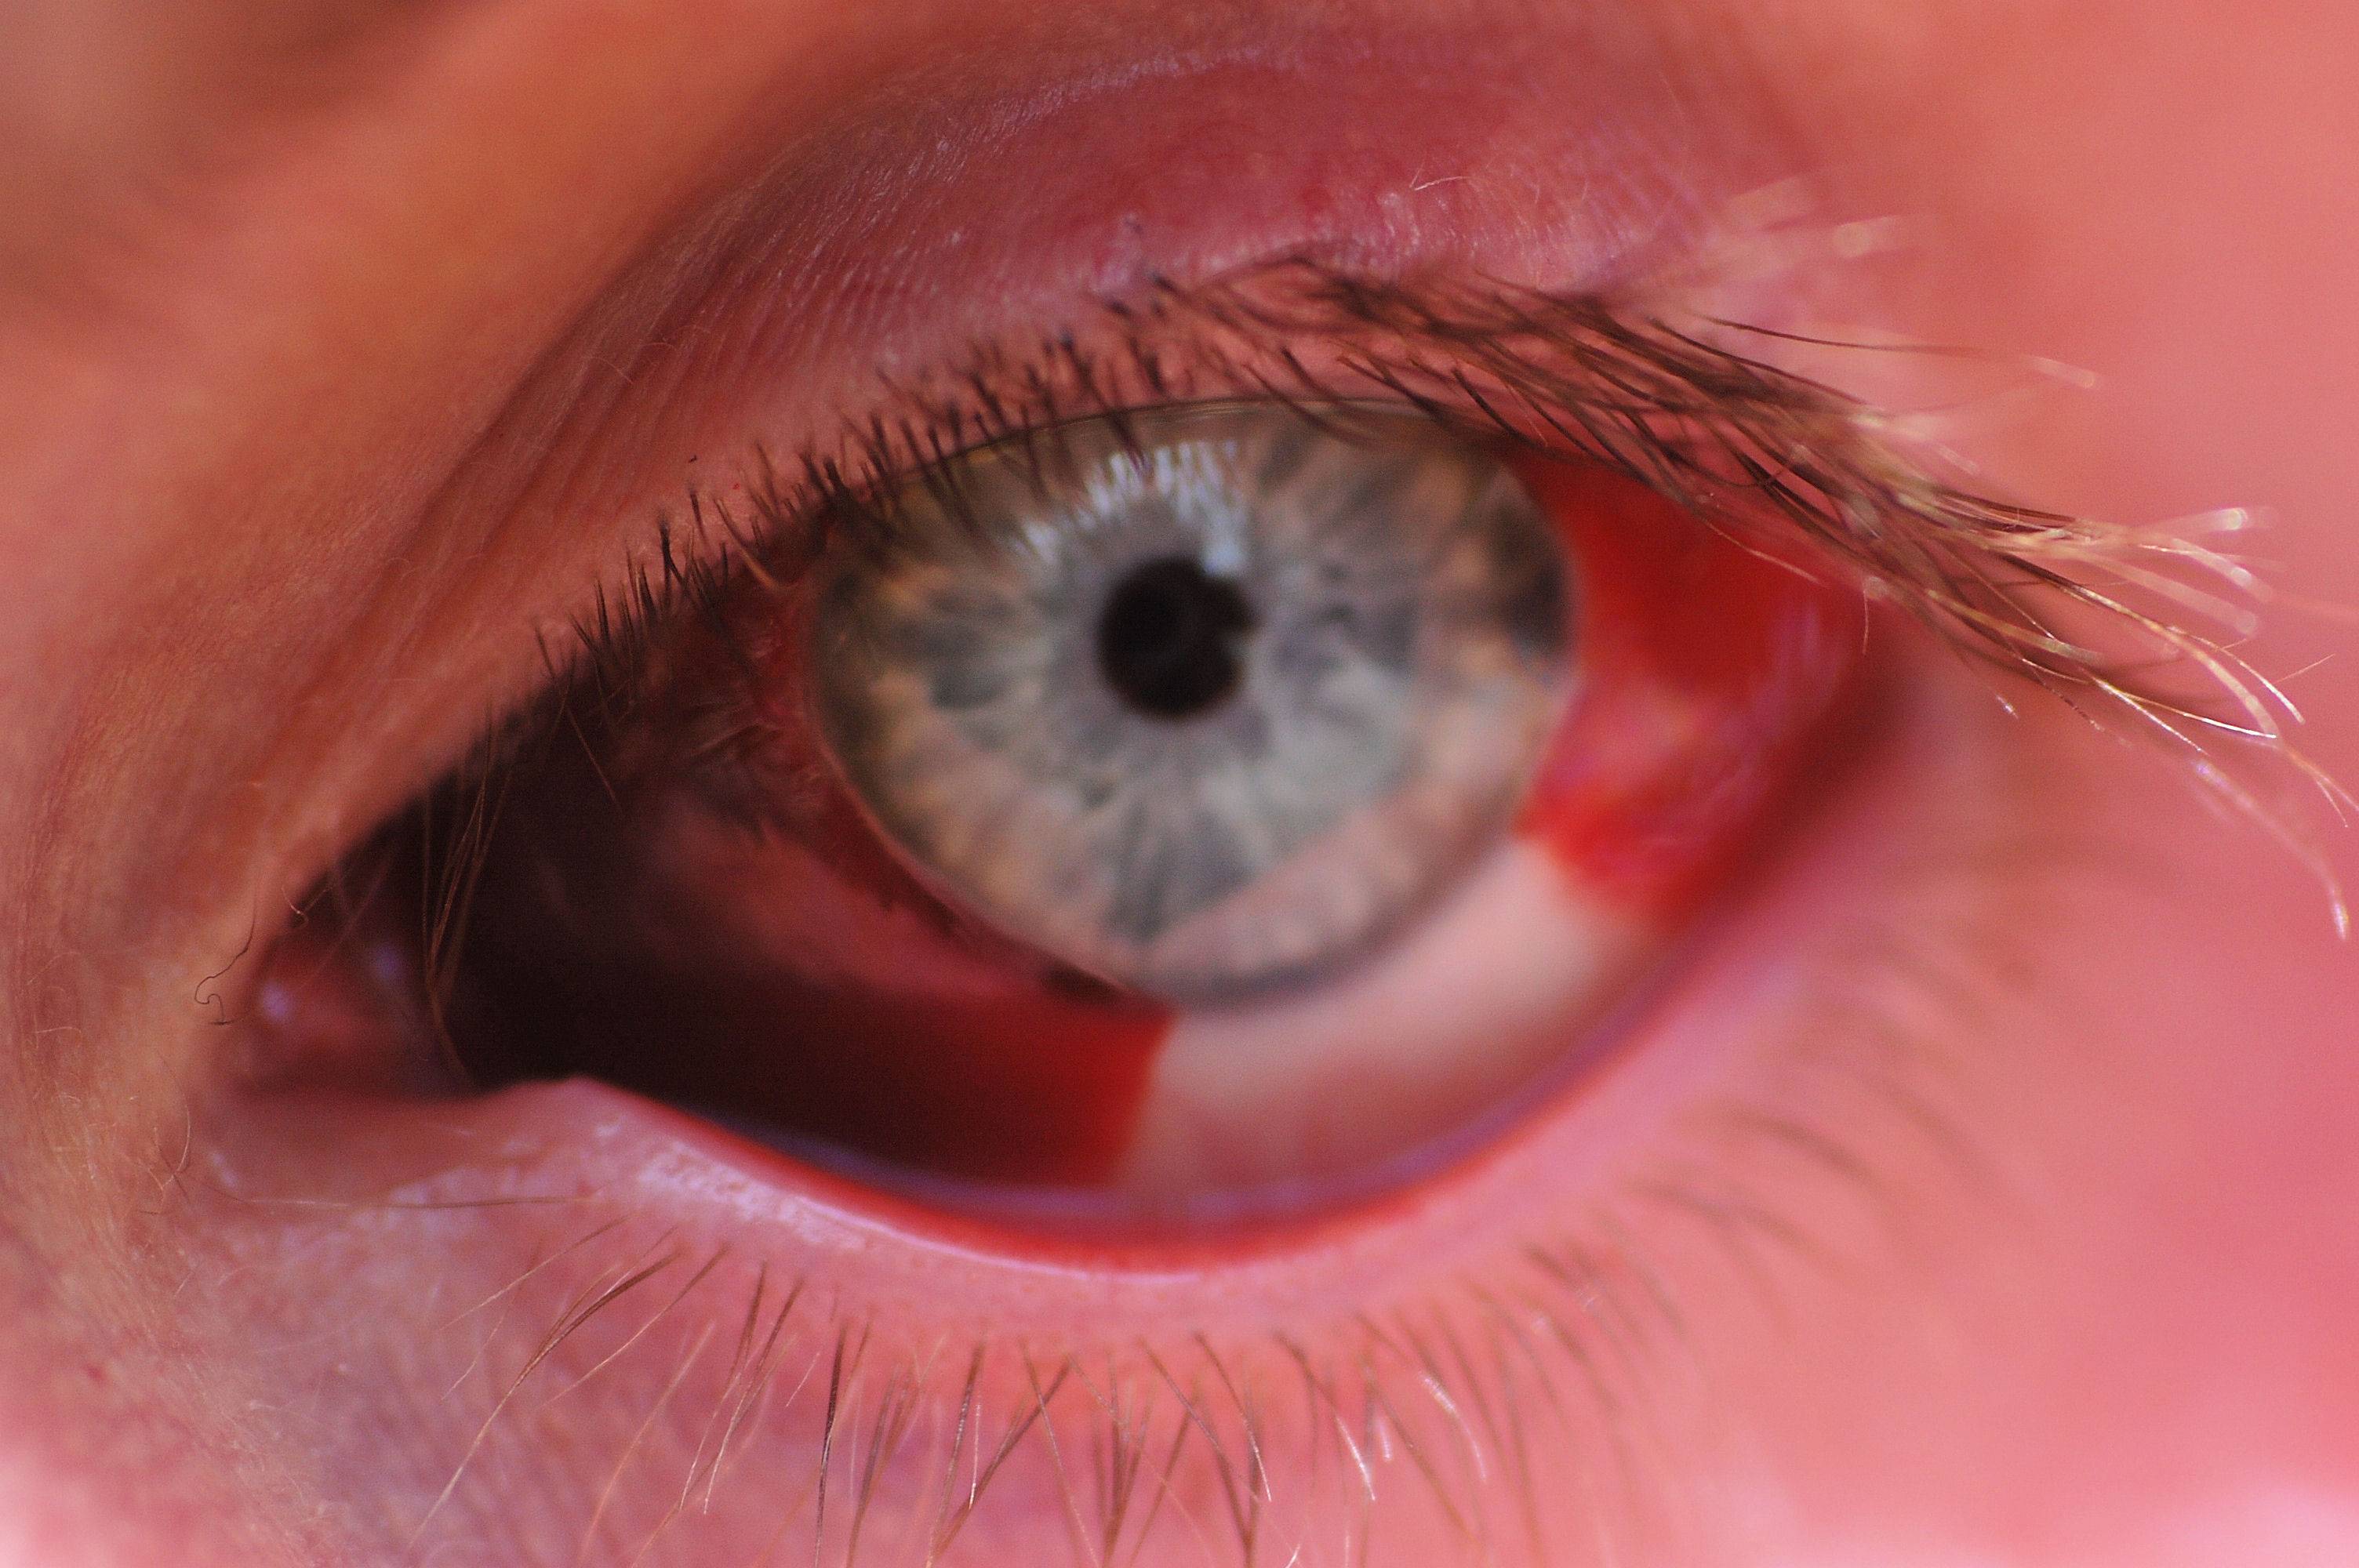 Контузия глаза | компетентно о здоровье на ilive